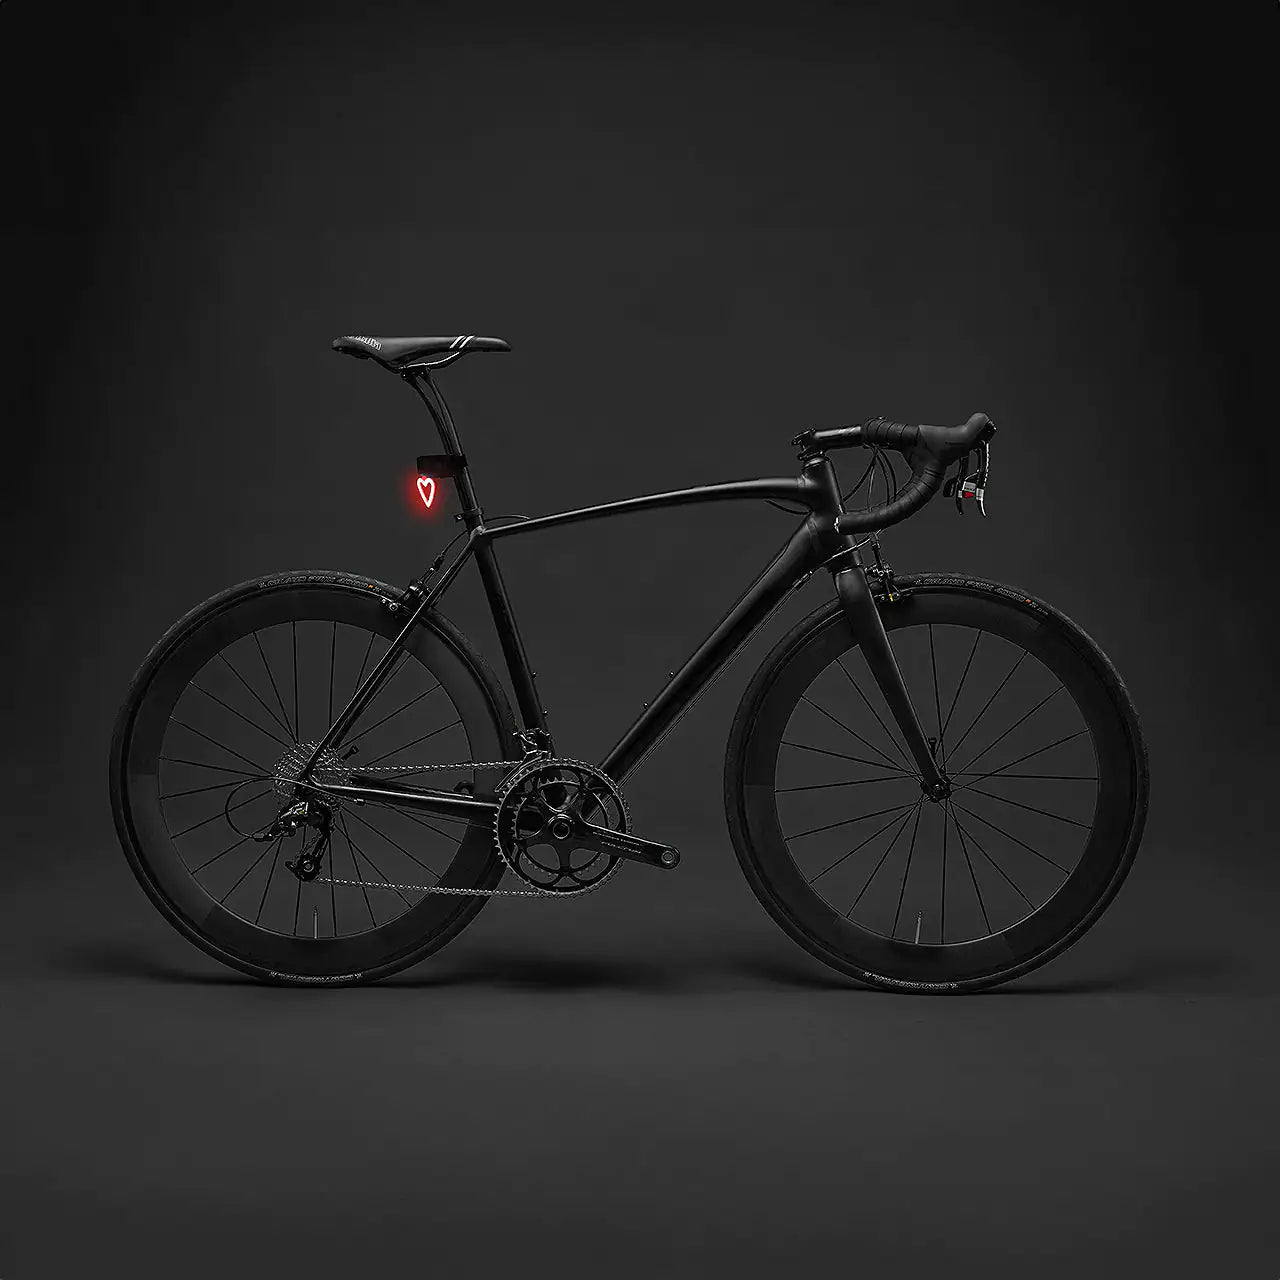 LED Bike Tail Light